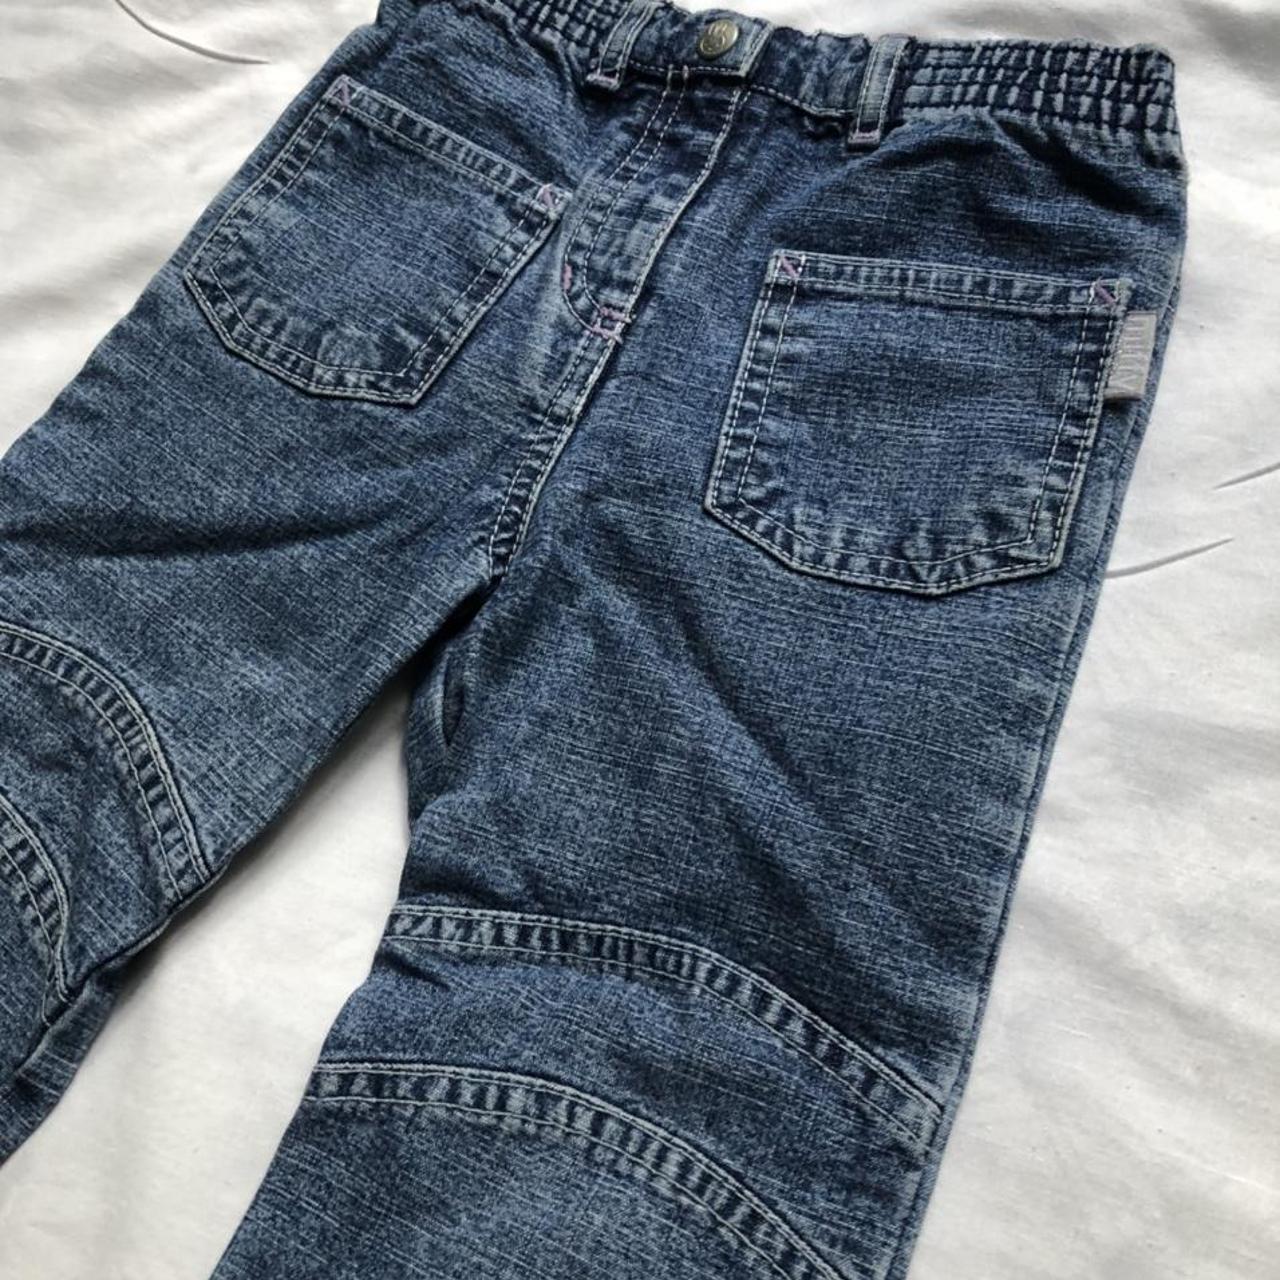 Miffy Jeans Authentic y2k jeans 👖 Cutest little... - Depop